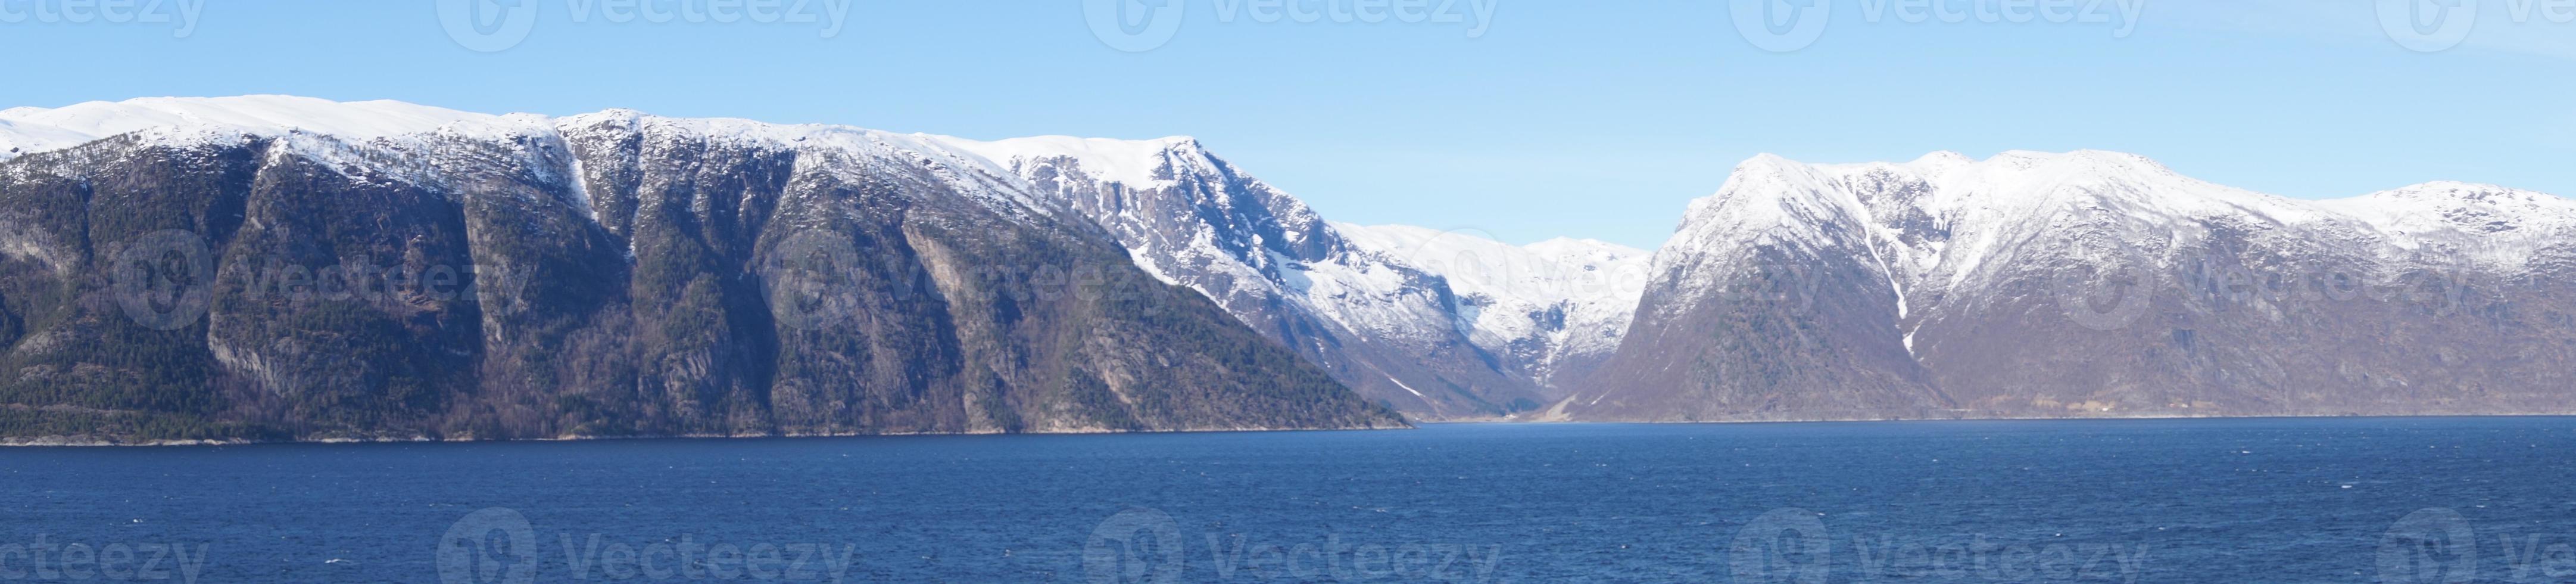 sognefjord in noorwegen foto